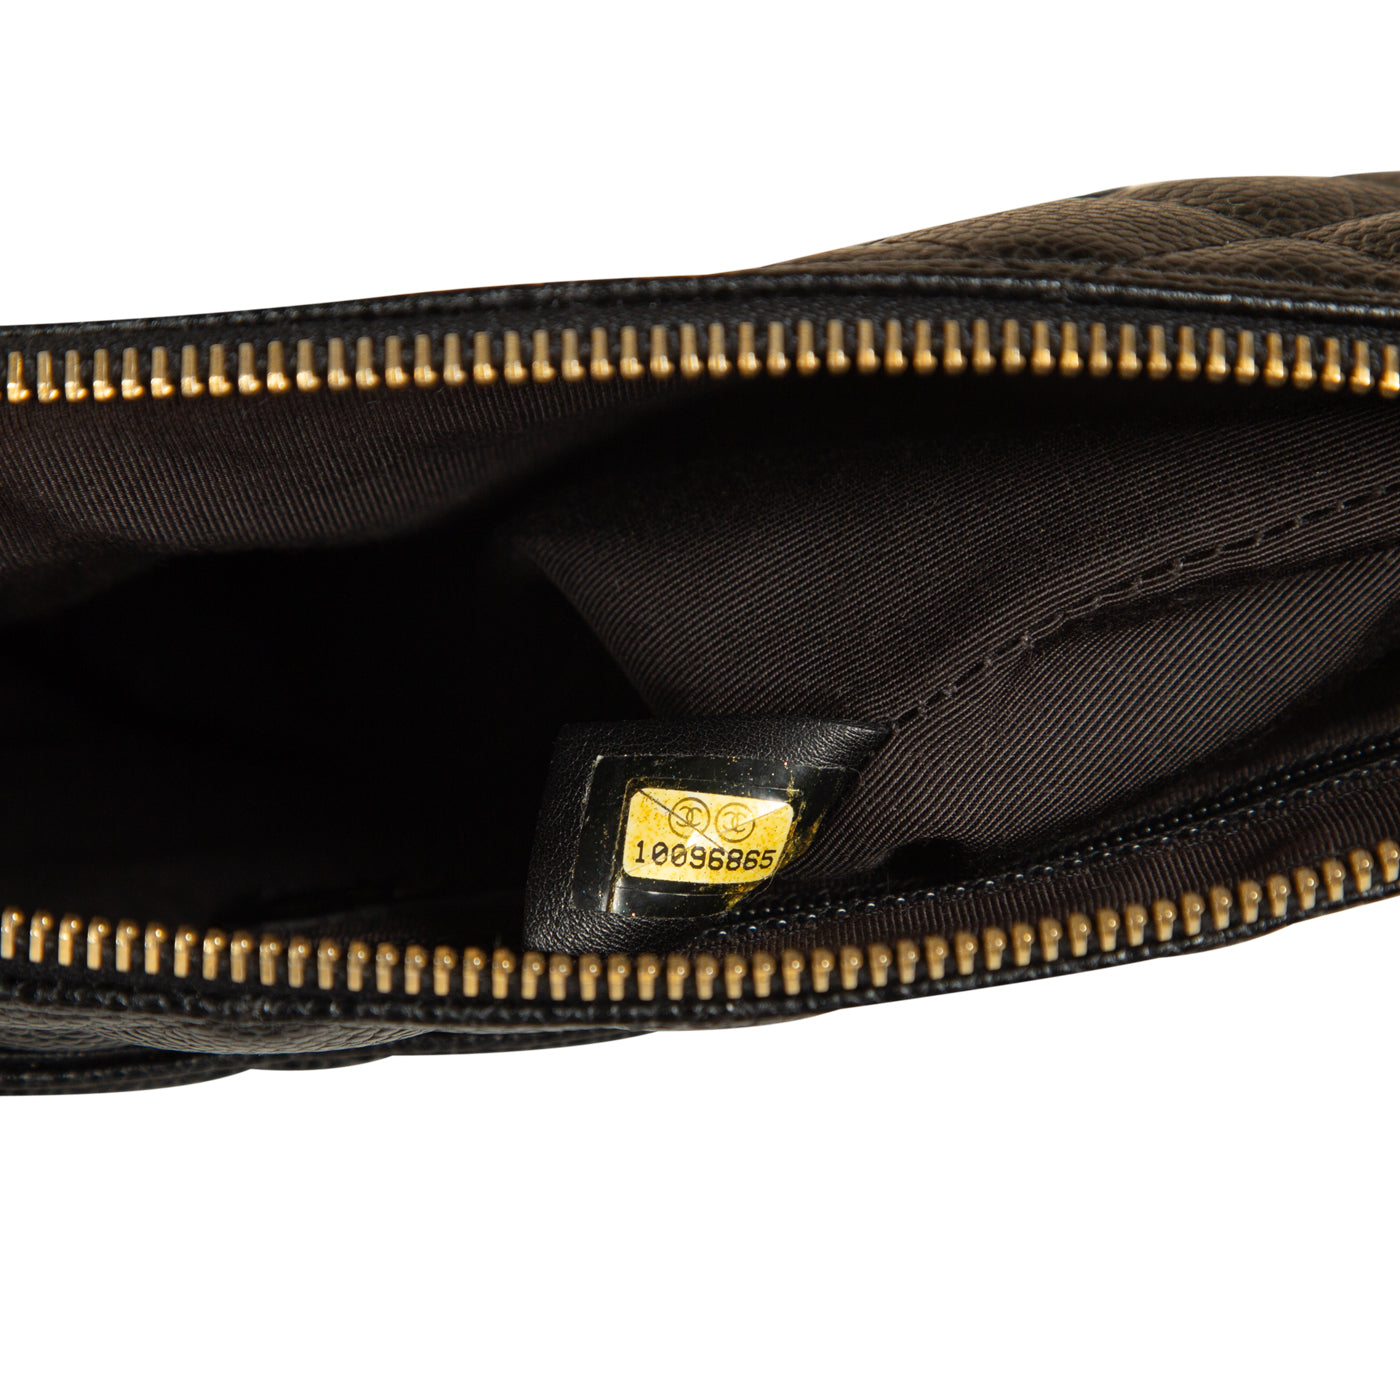 Chanel - Vintage Baguette bag